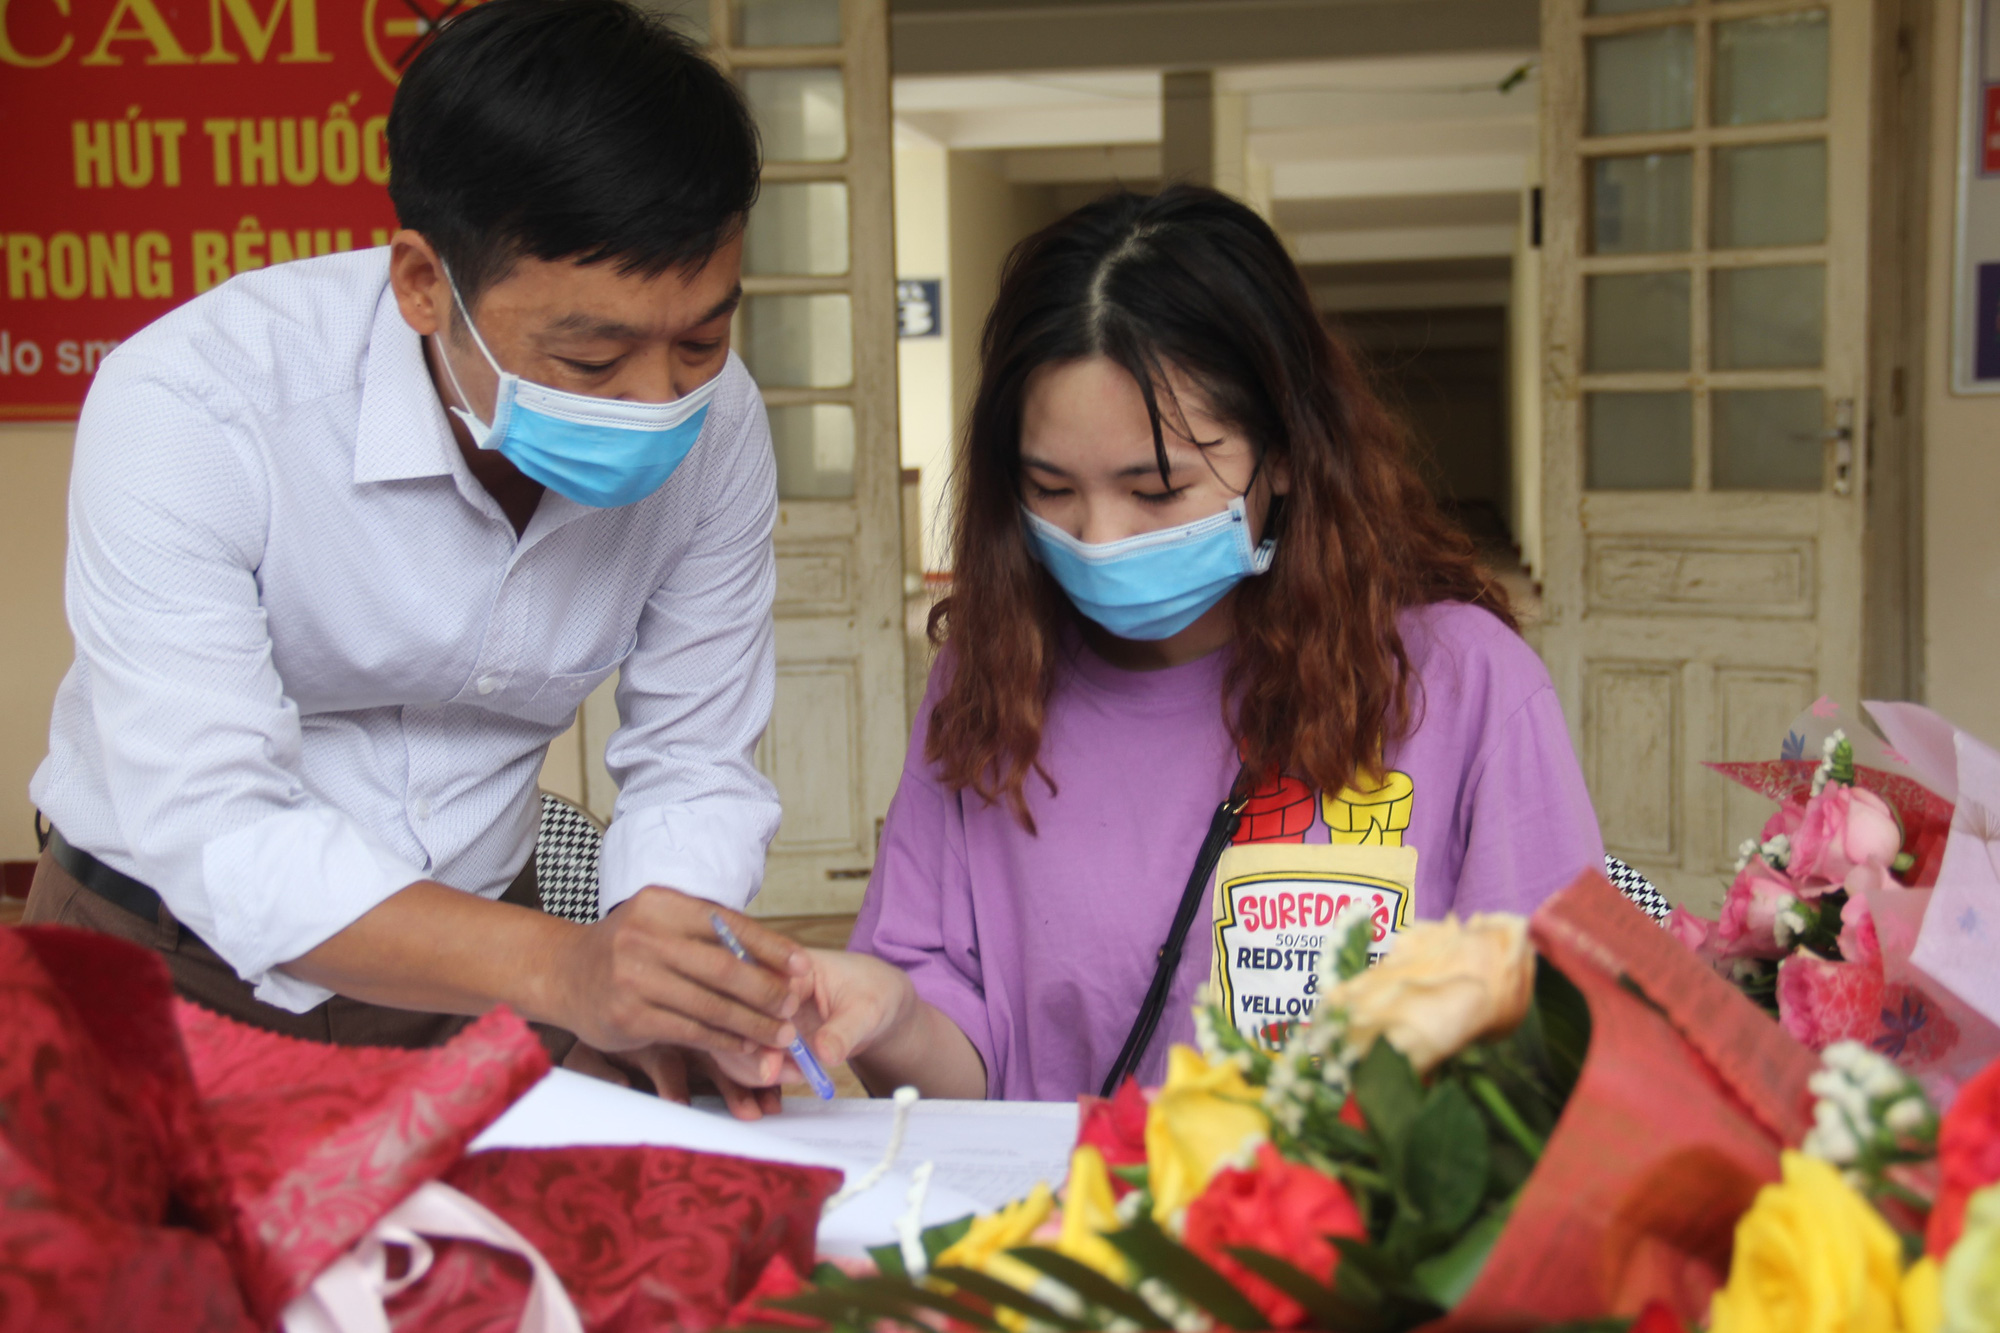 Nữ bệnh nhân nhiễm Covid-19 ở Hà Tĩnh: Liều thuốc tốt nhất là lạc quan yêu đời để chiến thắng - Ảnh 2.